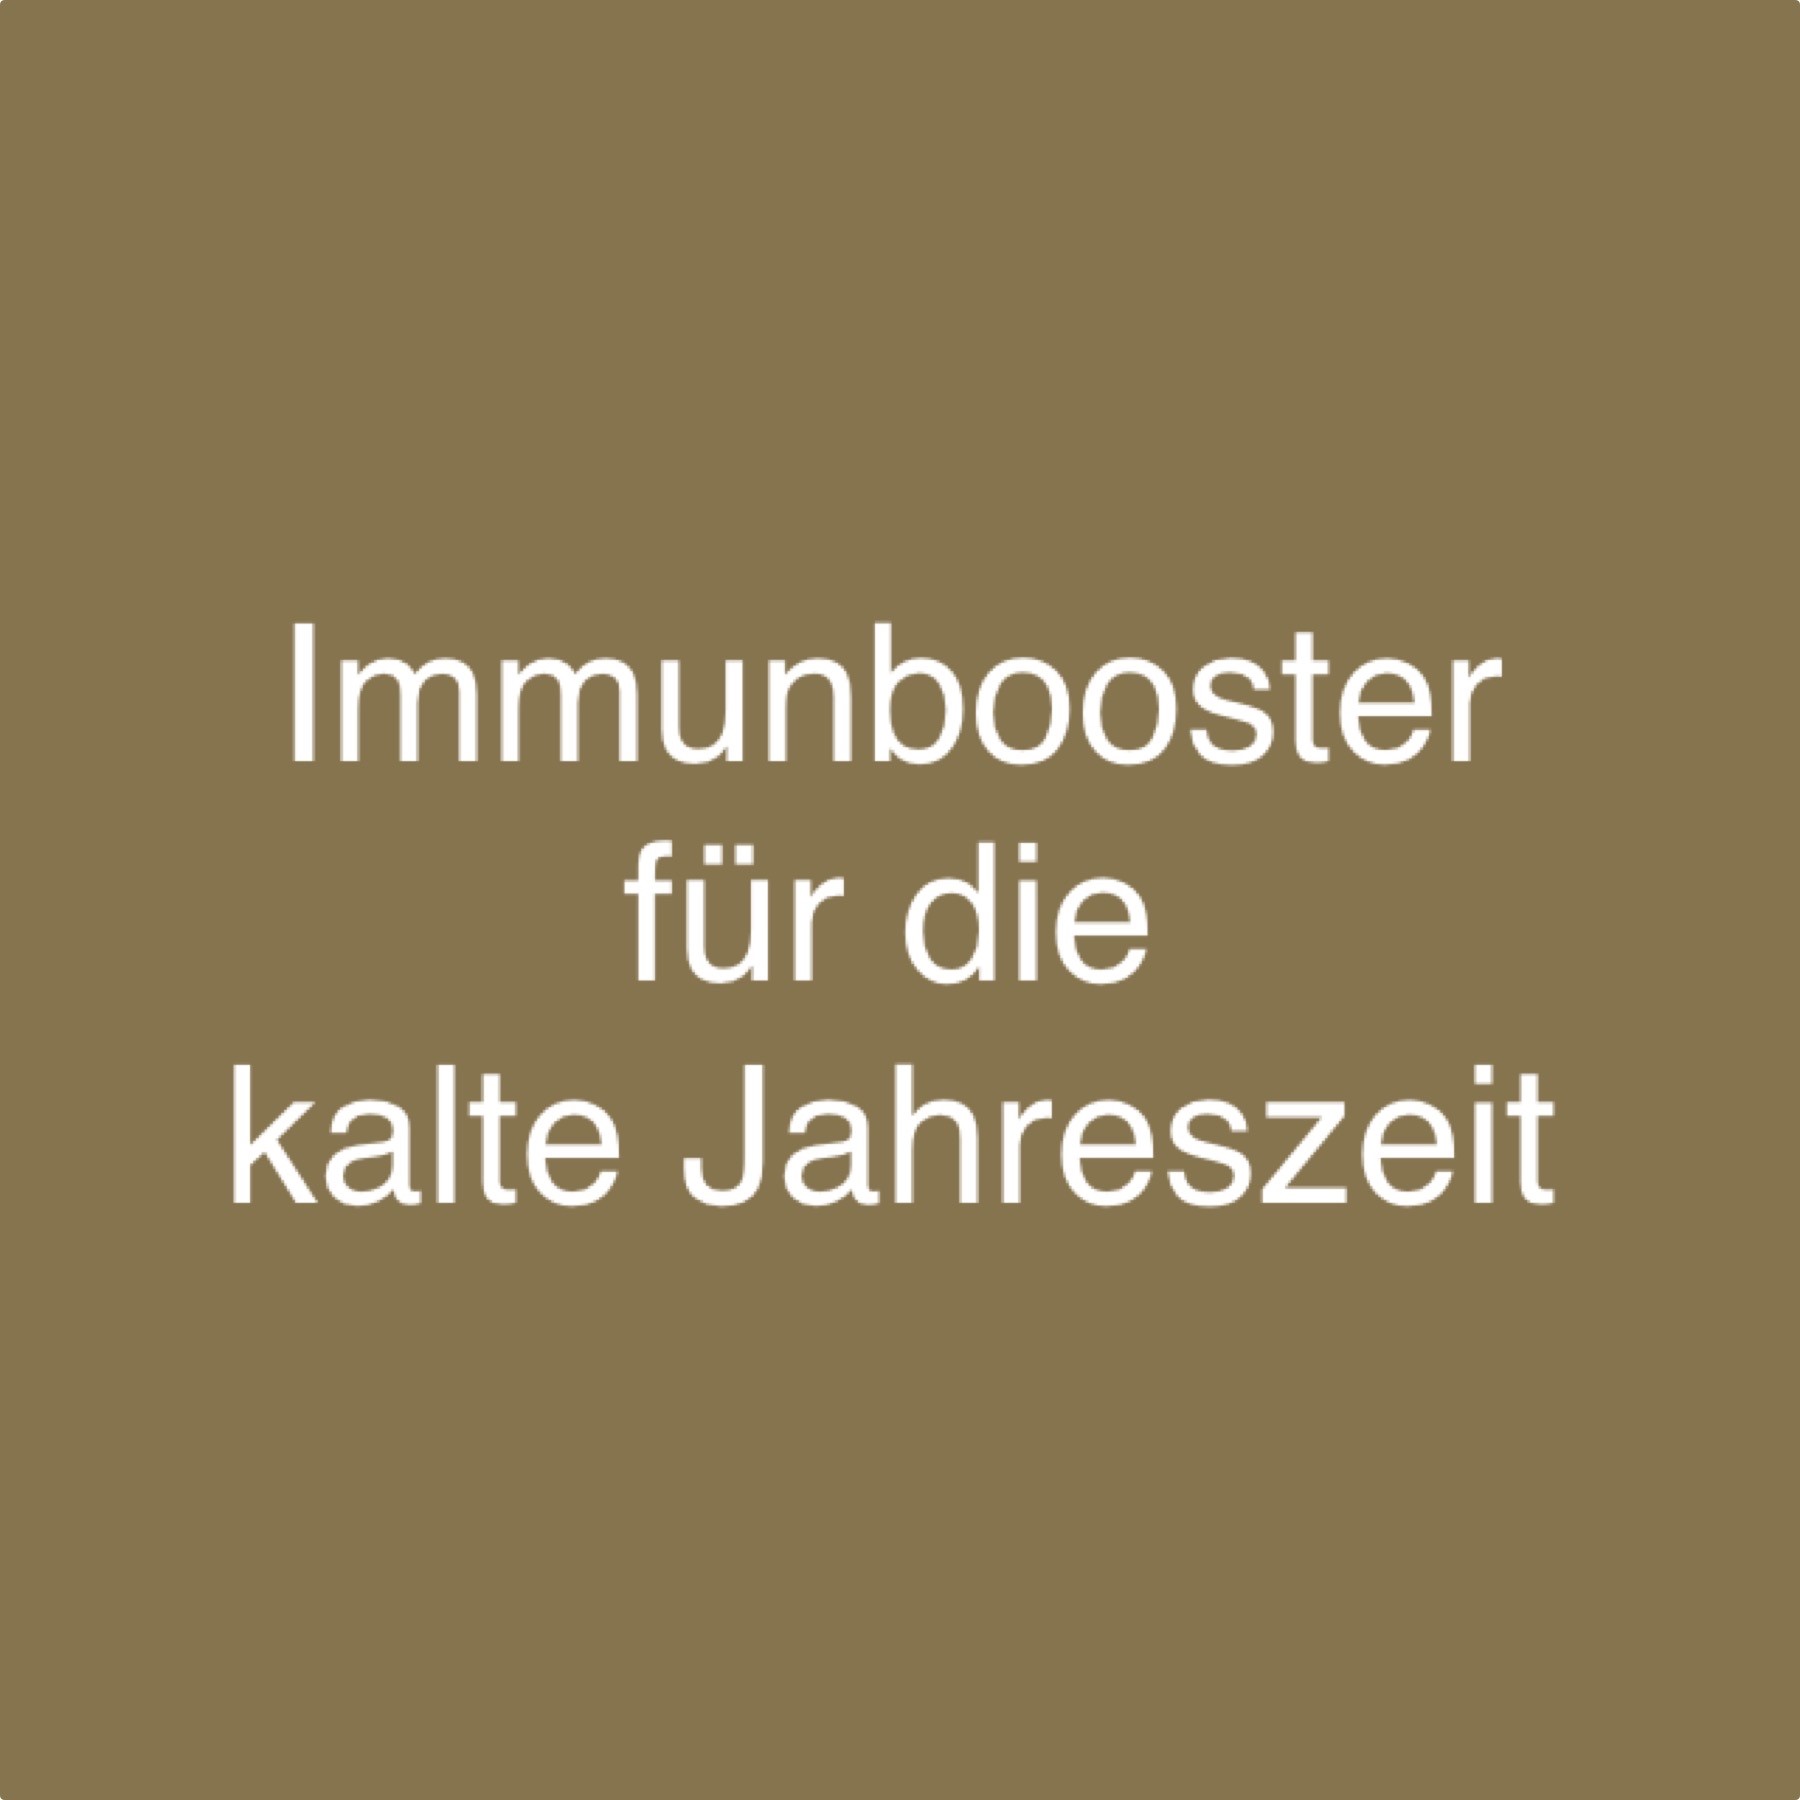 Immunbooster